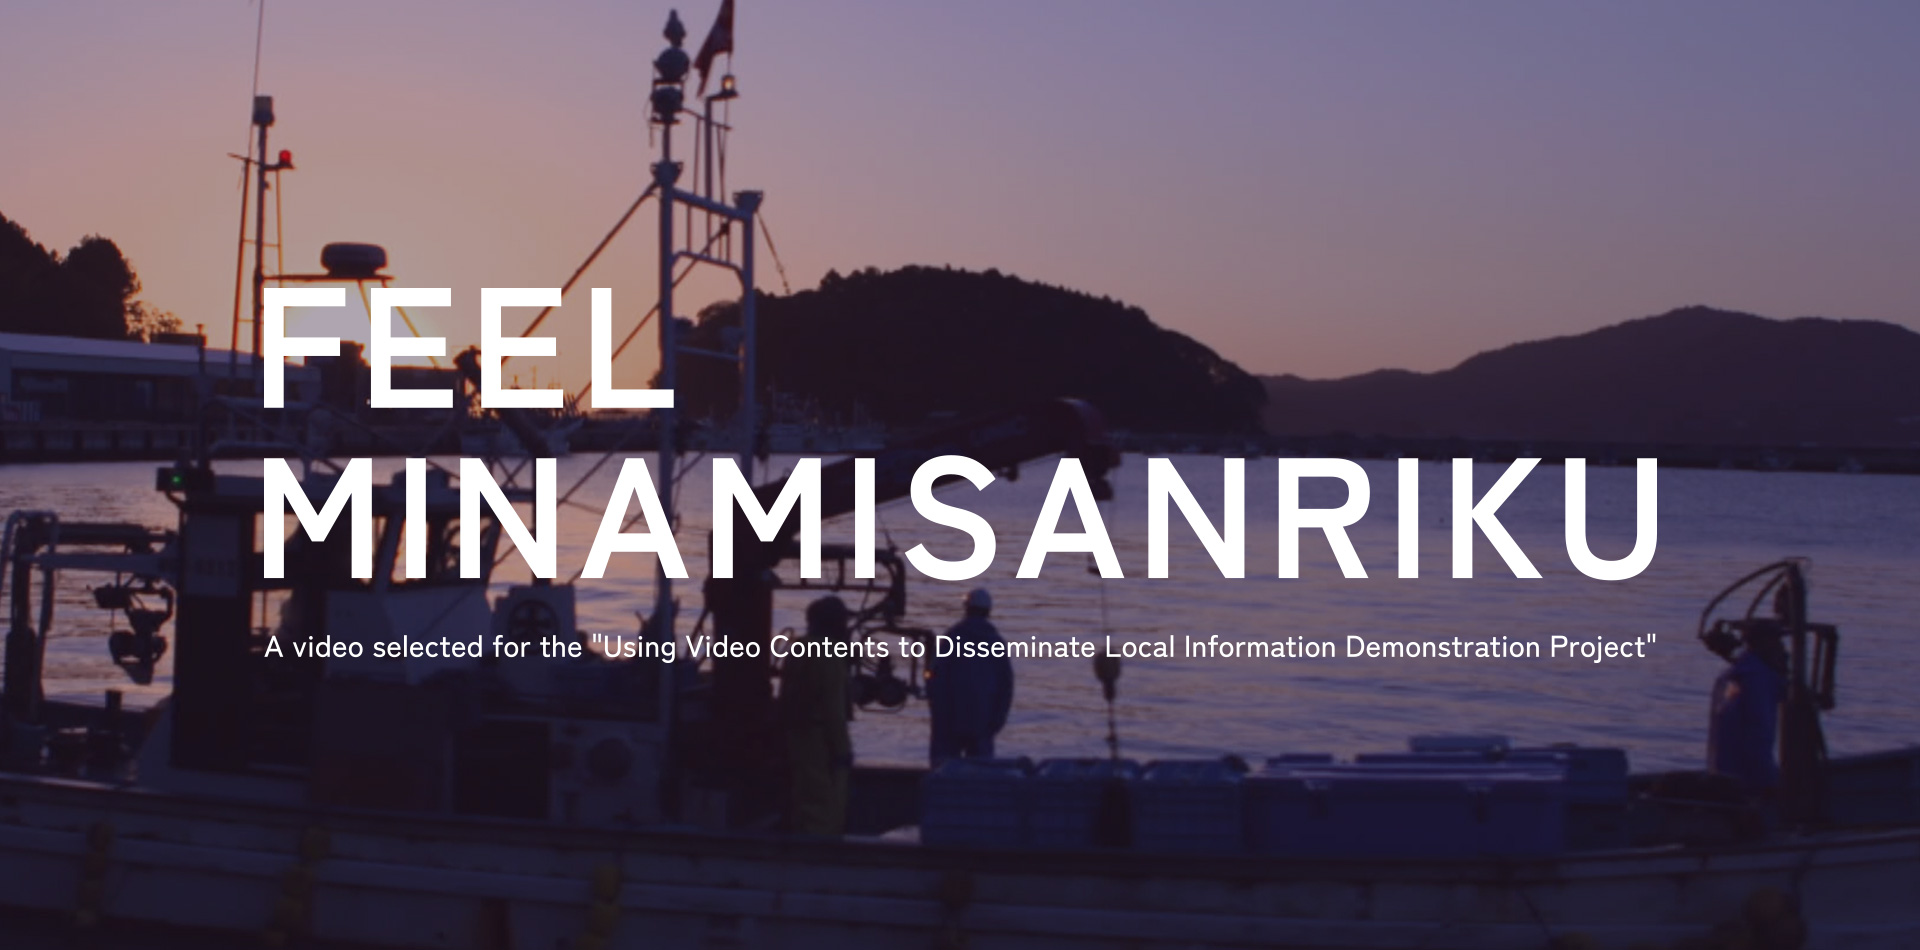 総務省「映像コンテンツを活用した地域情報発信に関する実証事業」採択動画「Feel Minamisanriku」